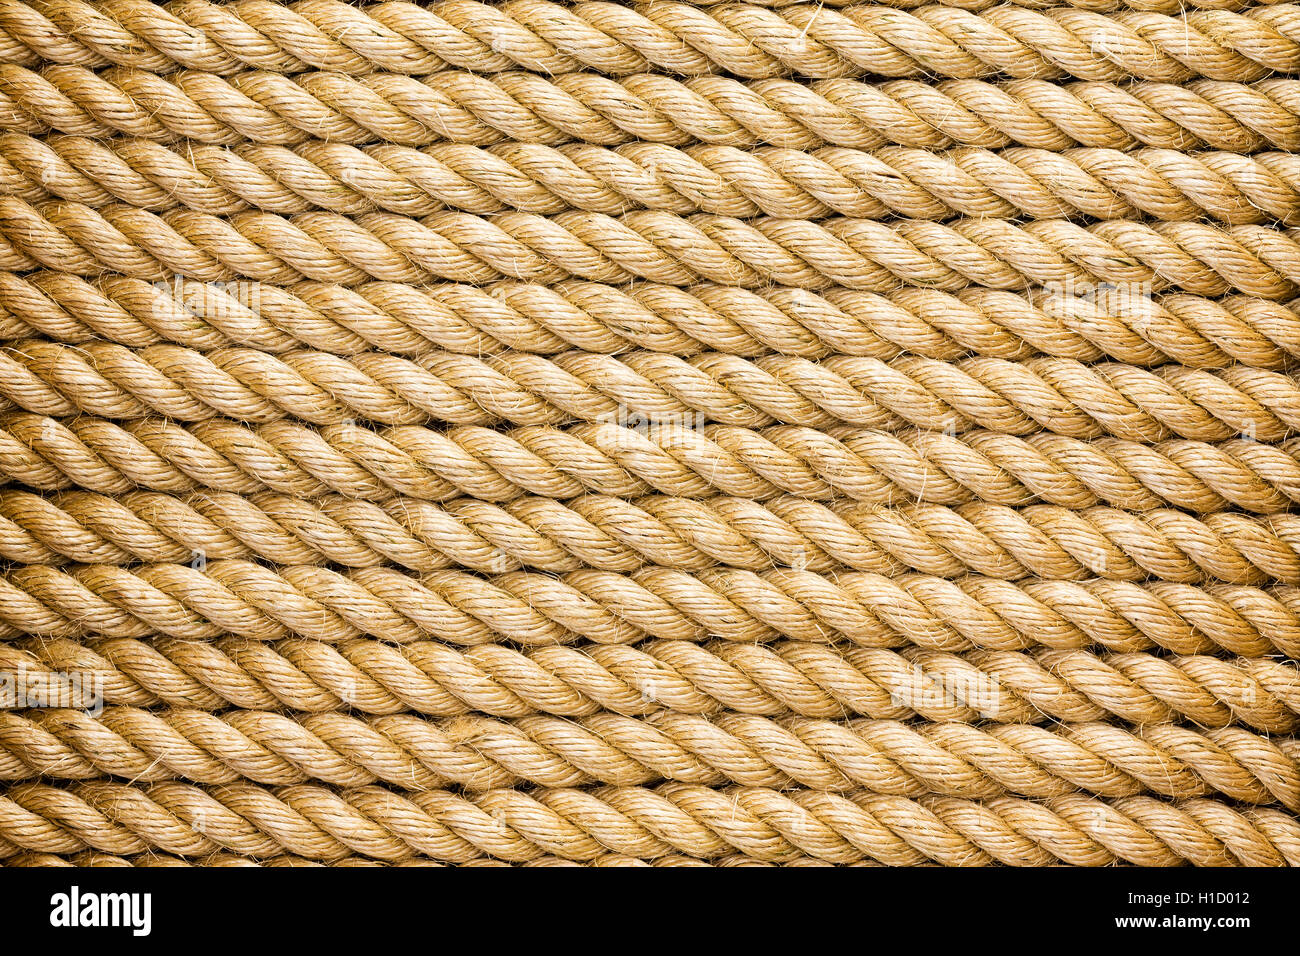 Ainsi organisés parallélisés d'une épaisse corde en fibre naturelle nouveau disposés horizontalement dans un châssis complet texture background Banque D'Images